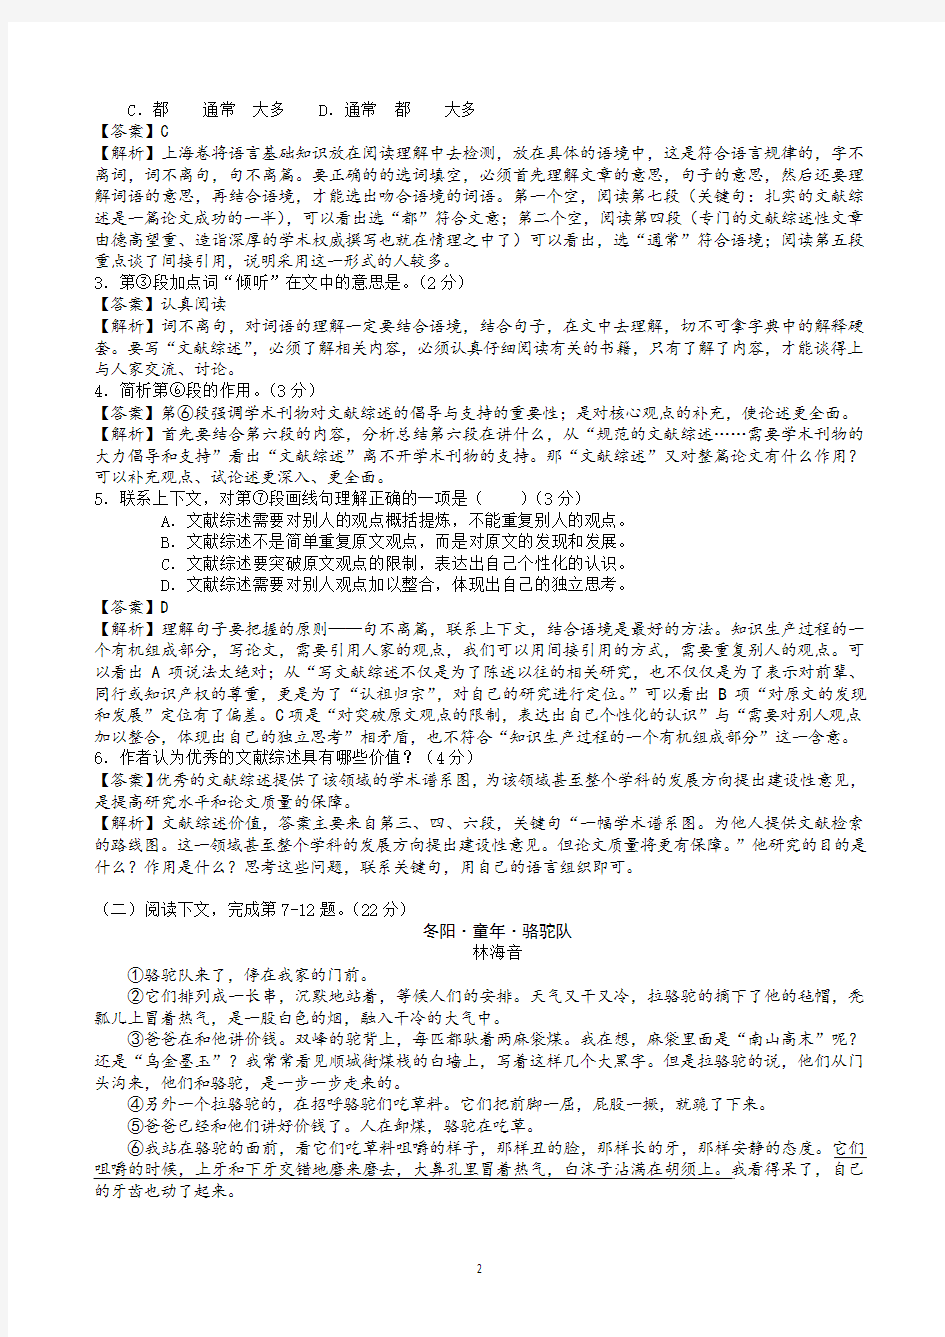 2012年上海高考语文真题及详细解释教师版